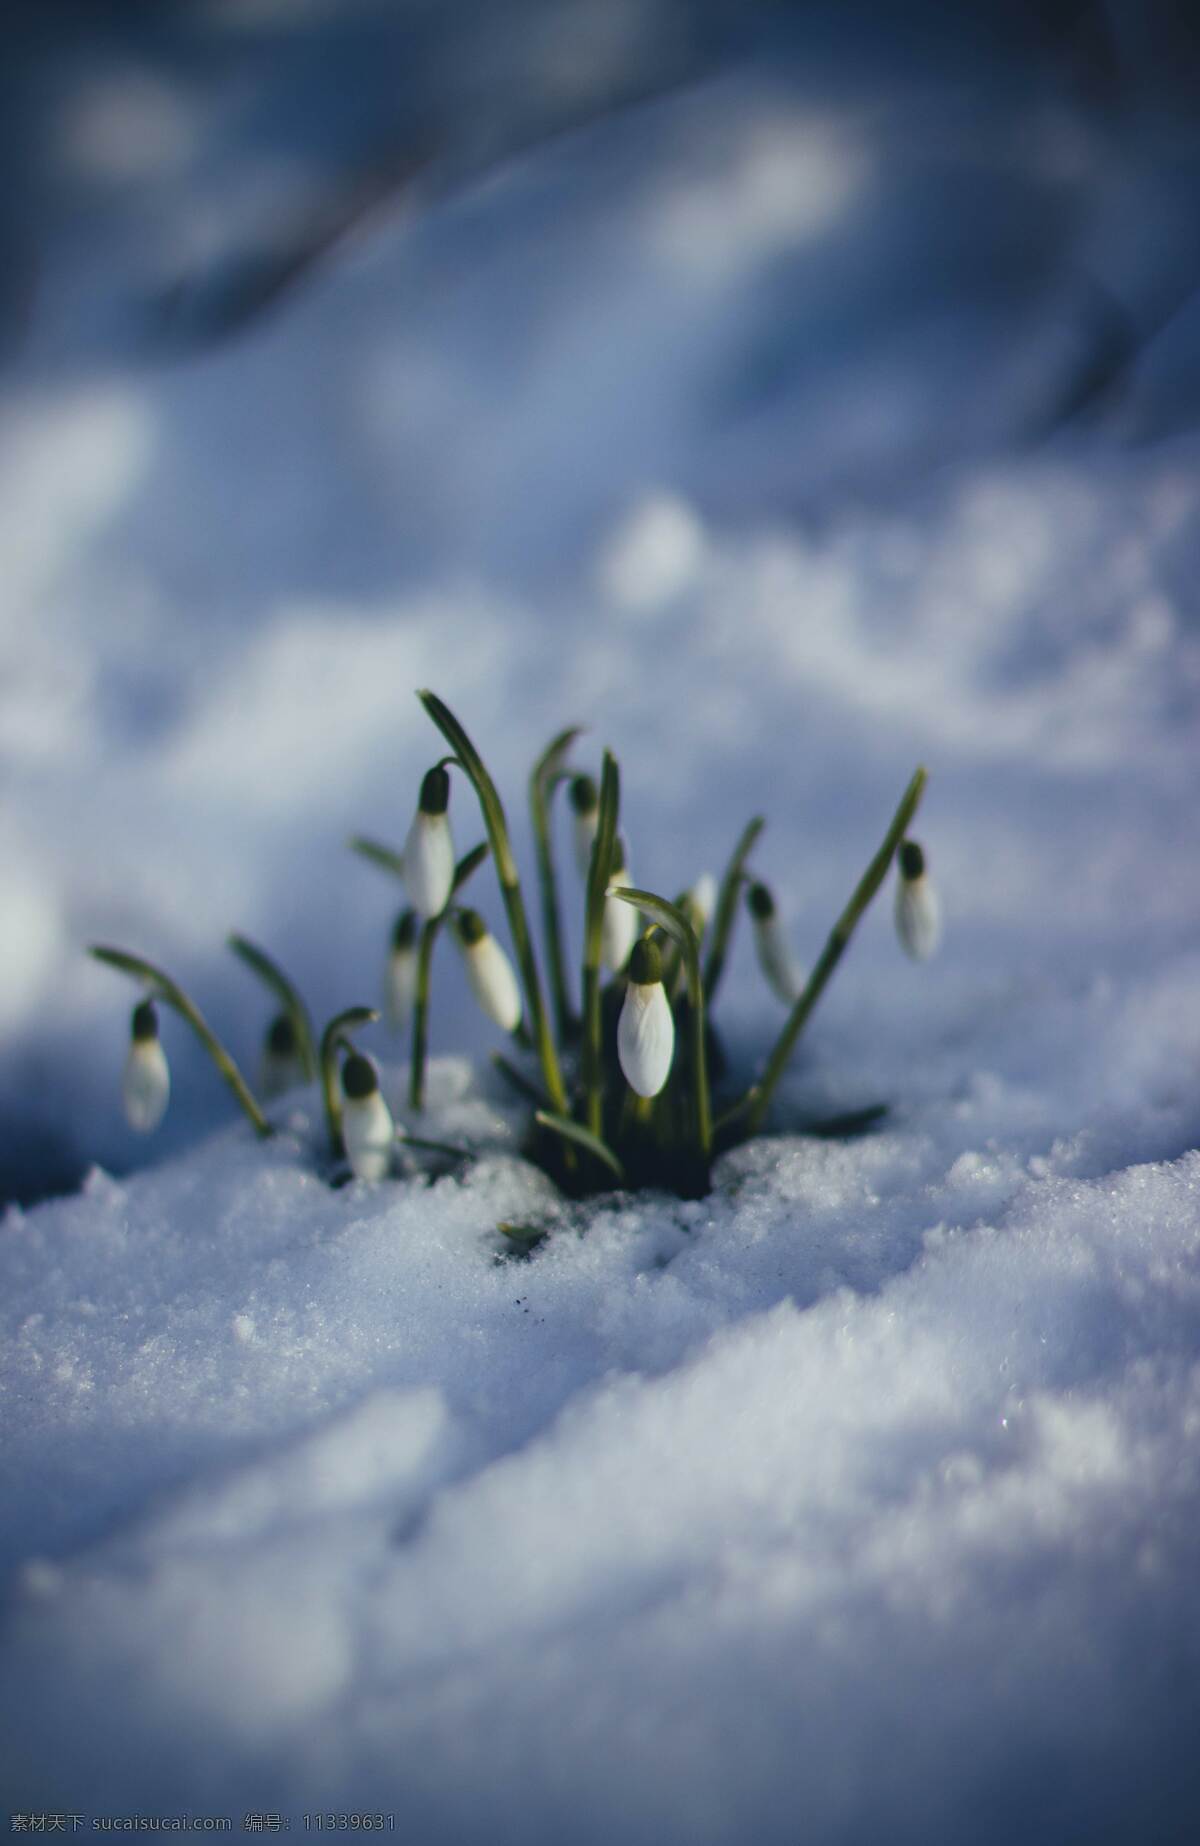 萌芽 发芽 春天破土而出 雪地 芽 生物世界 花草